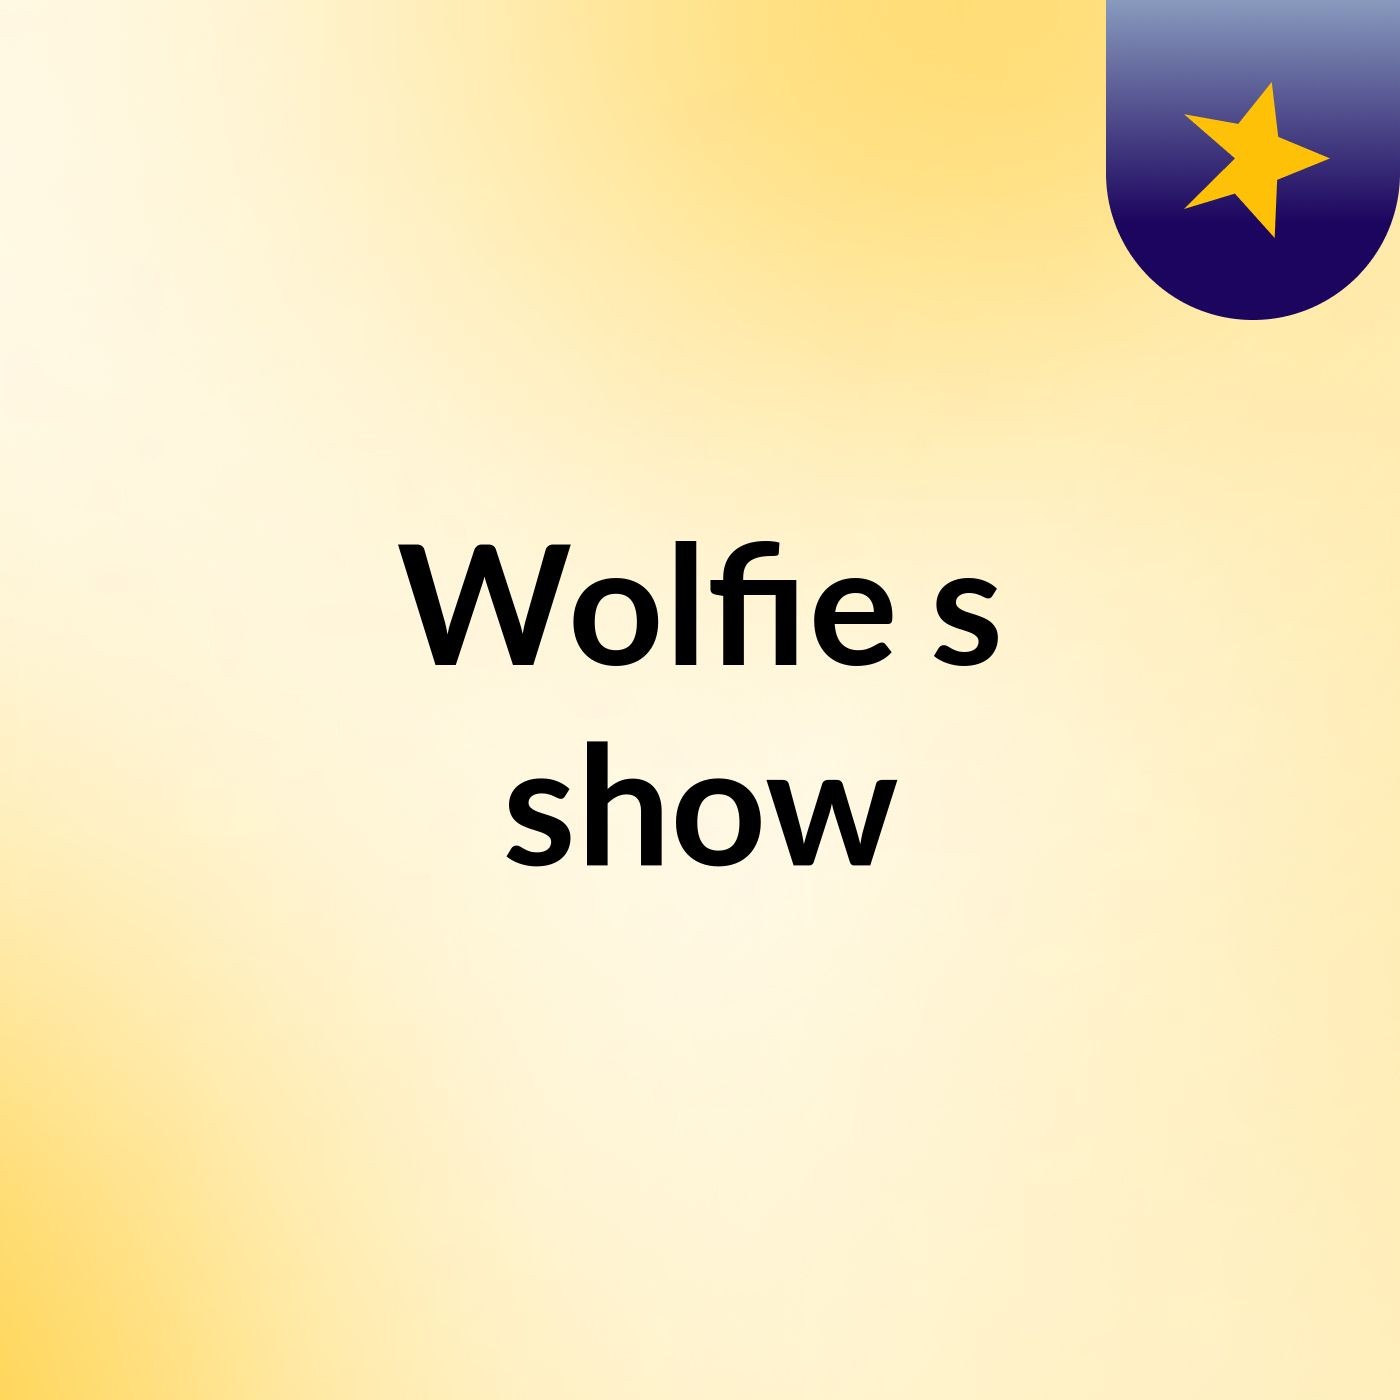 Wolfie's show